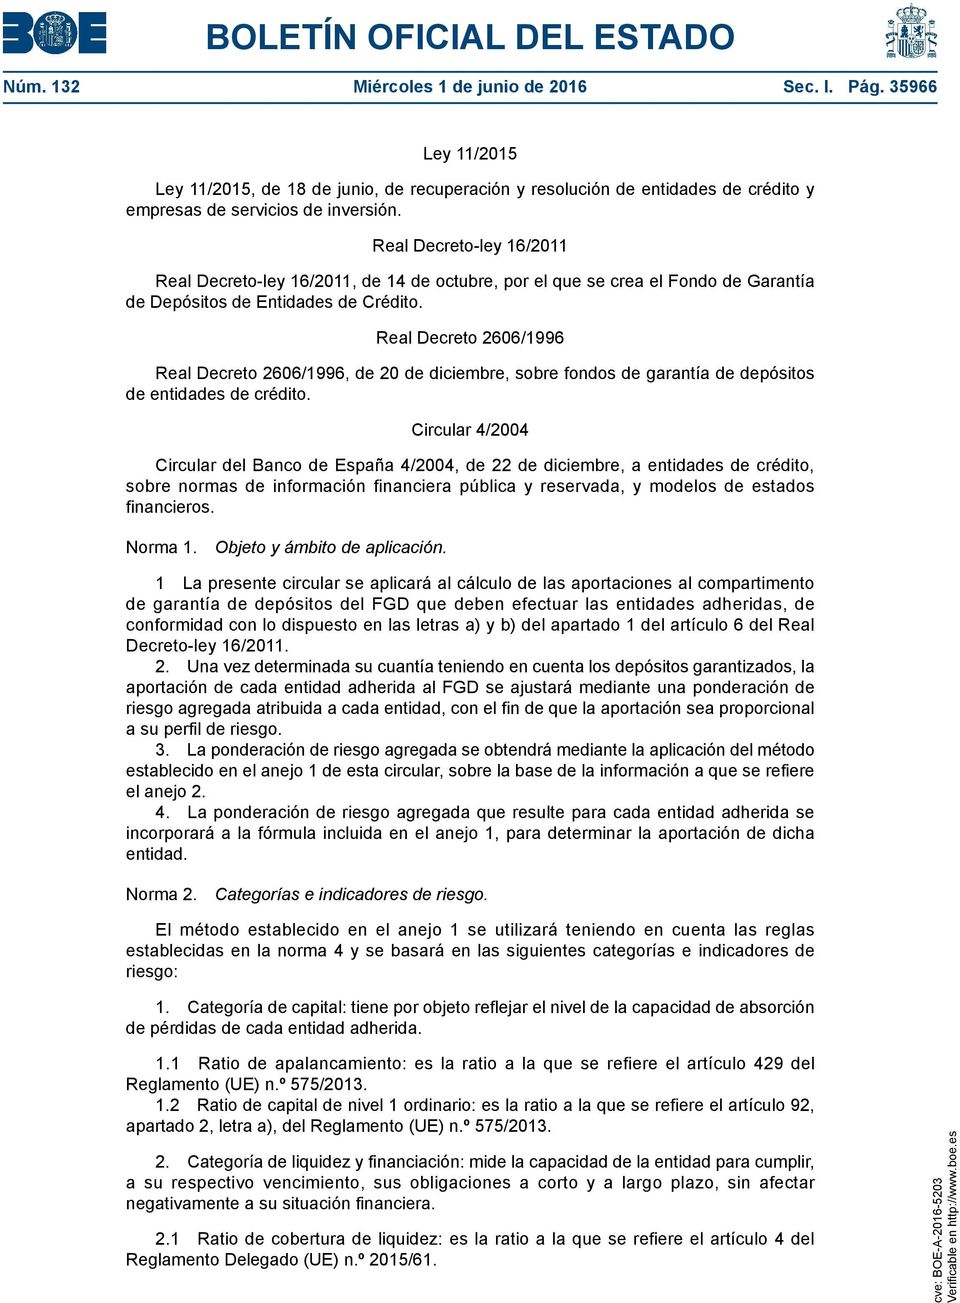 Real Decreto 2606/1996 Real Decreto 2606/1996, de 20 de diciembre, sobre fondos de garantía de depósitos de entidades de crédito.